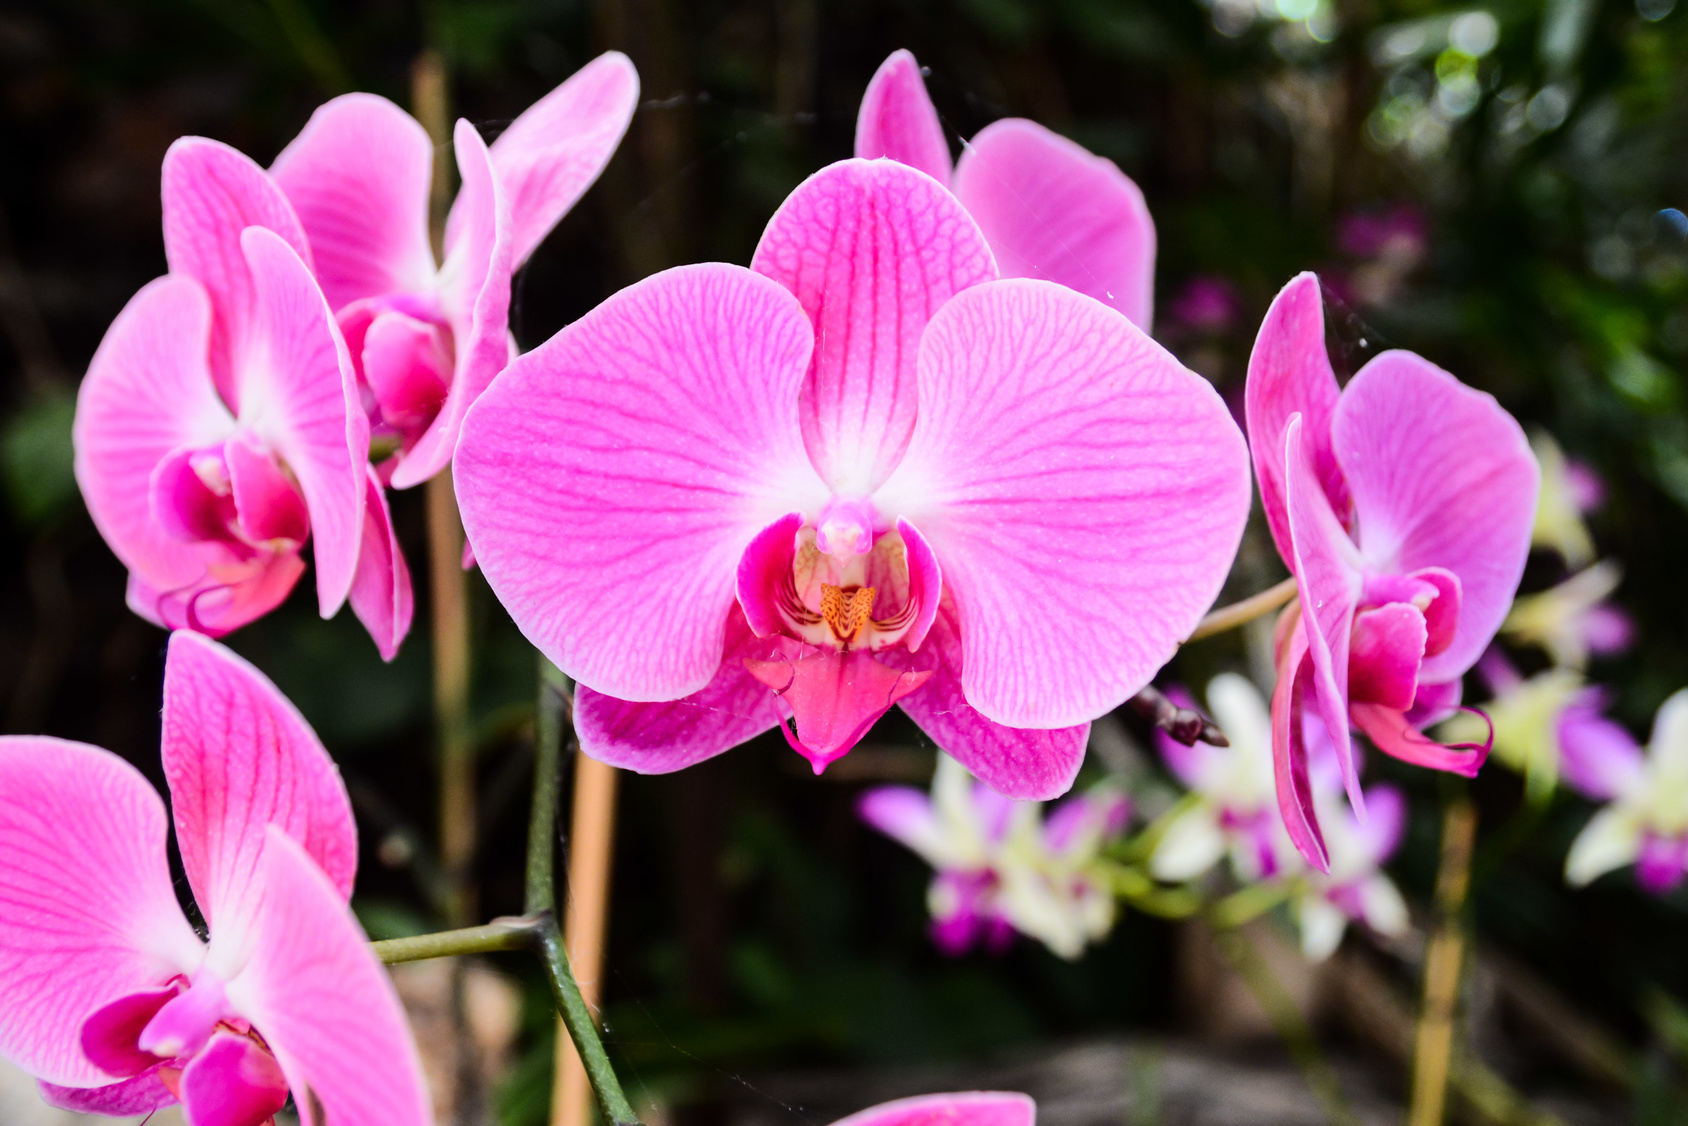 Les orchidées ont besoin de lumière et d'une température adaptée, et d'un arrosage sans excès. © Underworld, Fotolia